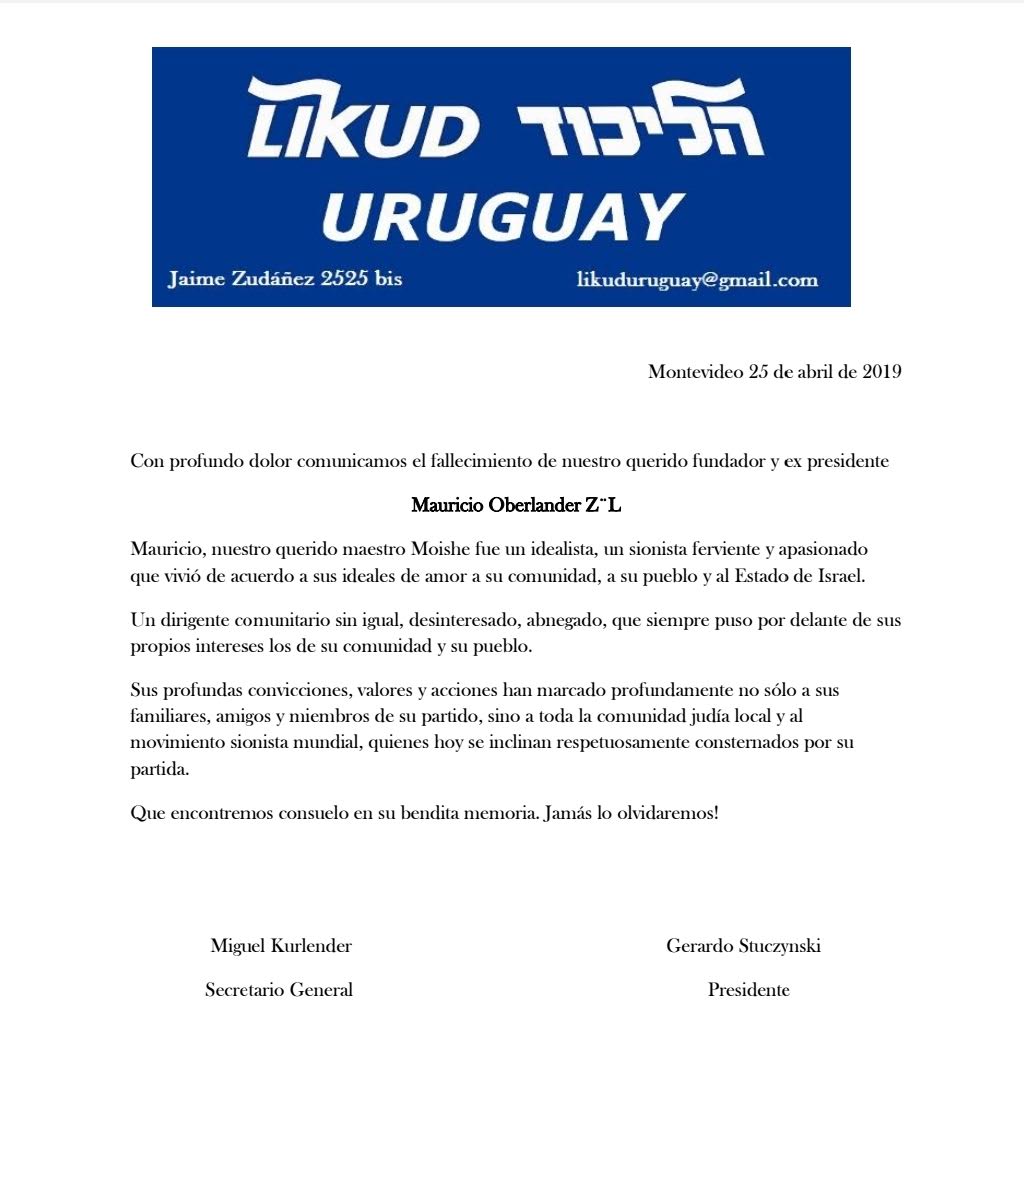 Comunicado de Likud Uruguay ante fallecimiento de Mauricio Oberlander